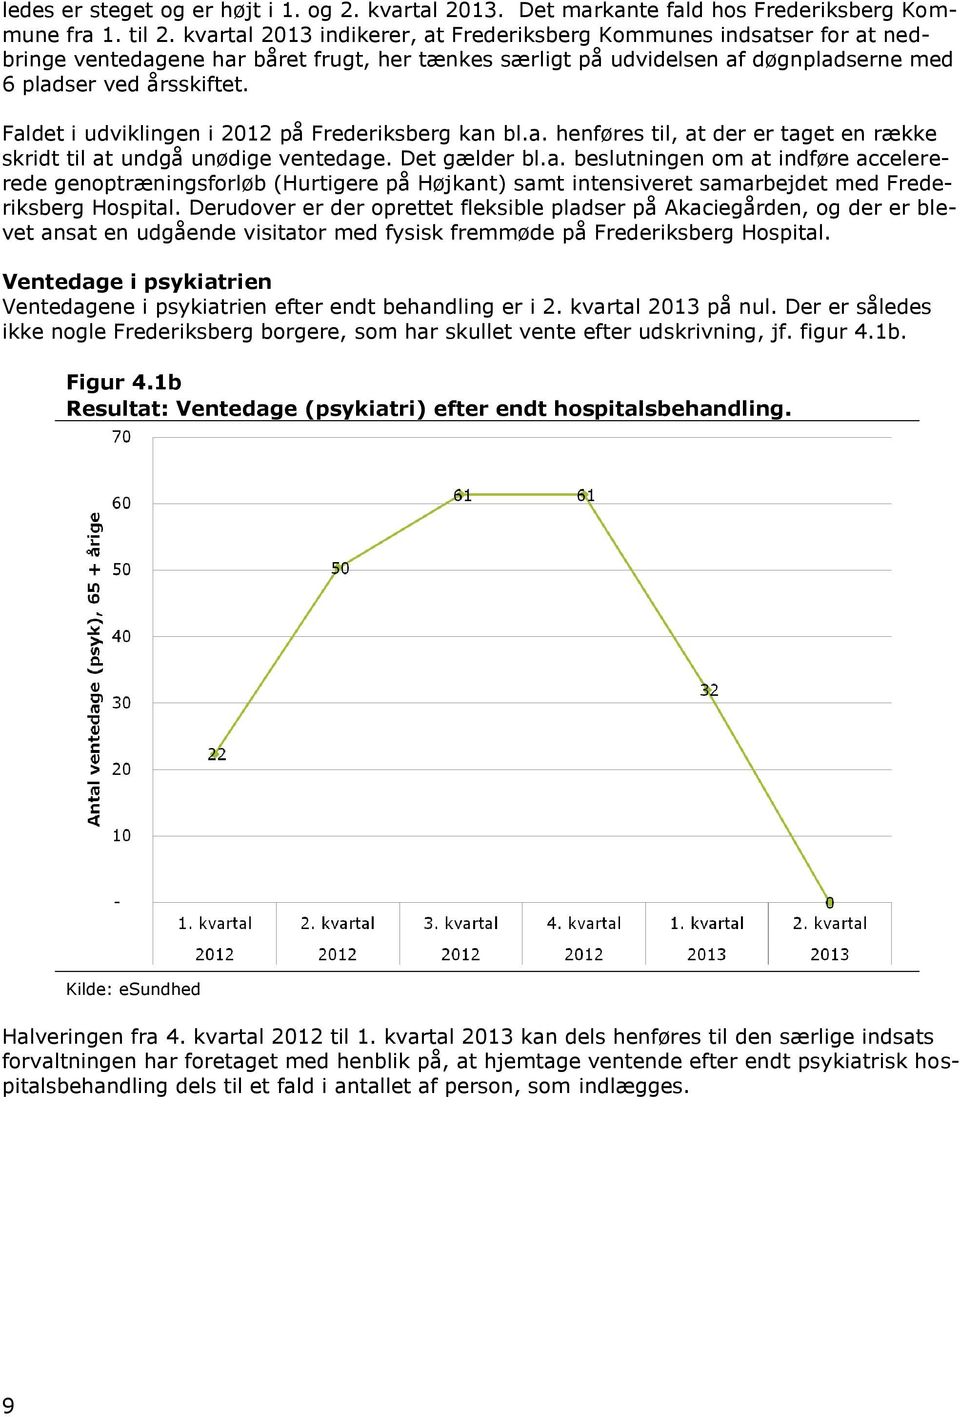 Faldet i udviklingen i 2012 på Frederiksberg kan bl.a. henføres til, at der er taget en række skridt til at undgå unødige ventedage. Det gælder bl.a. beslutningen om at indføre accelererede genoptræningsforløb (Hurtigere på Højkant) samt intensiveret samarbejdet med Frederiksberg Hospital.